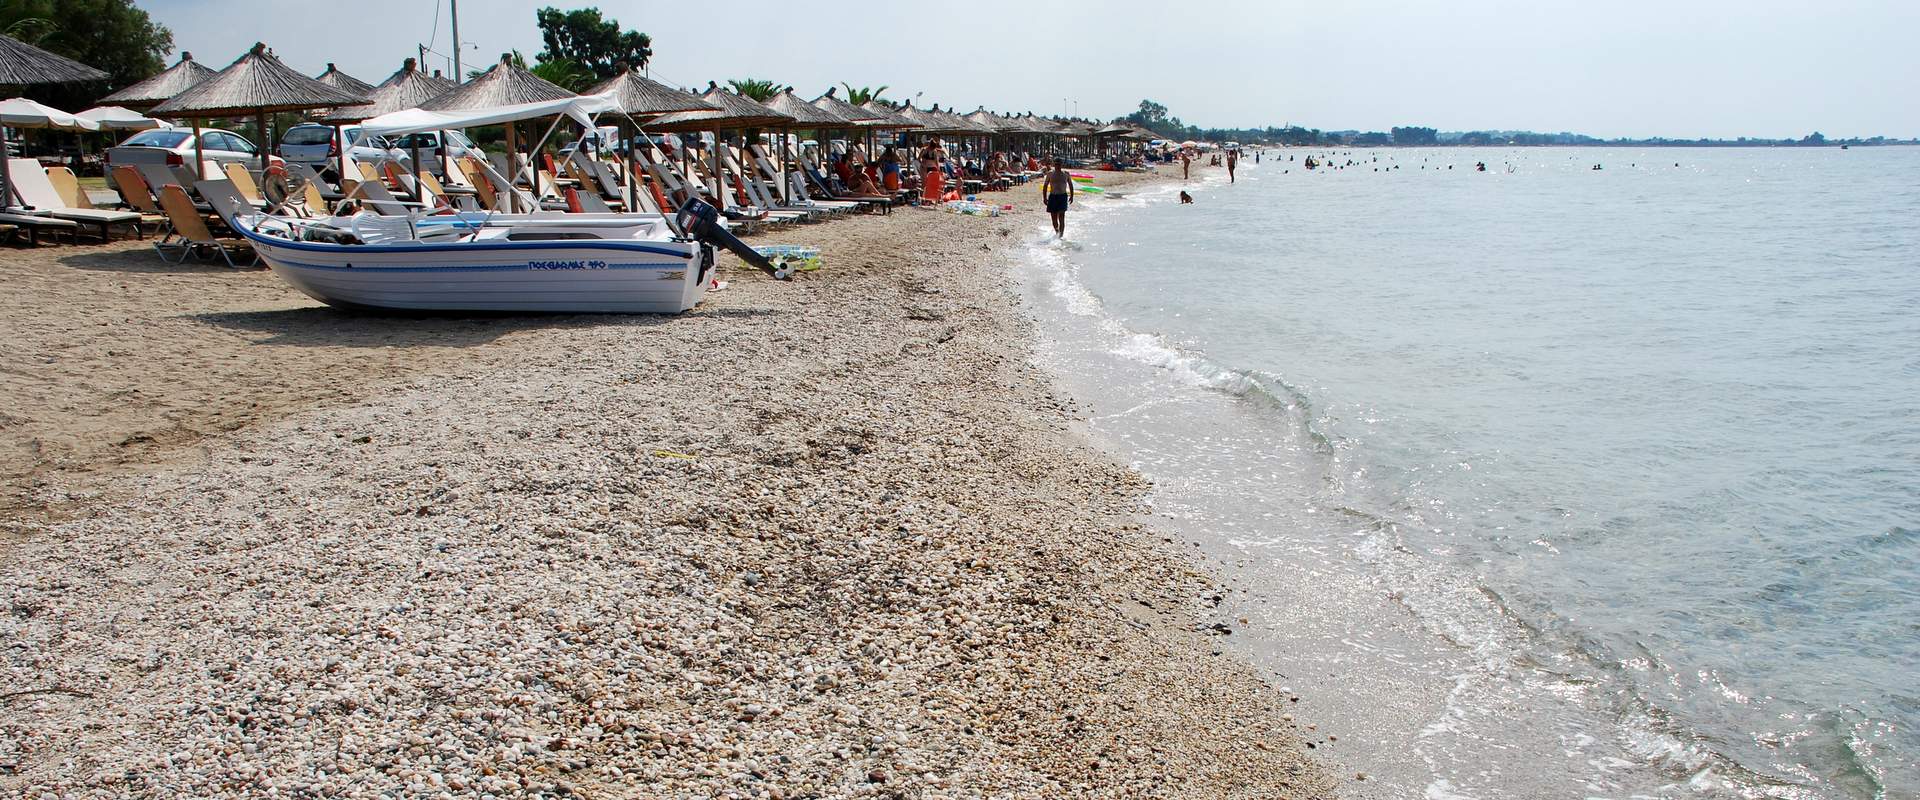 Σωζόπόλη παραλία, Χαλκιδική, Ελλάδα